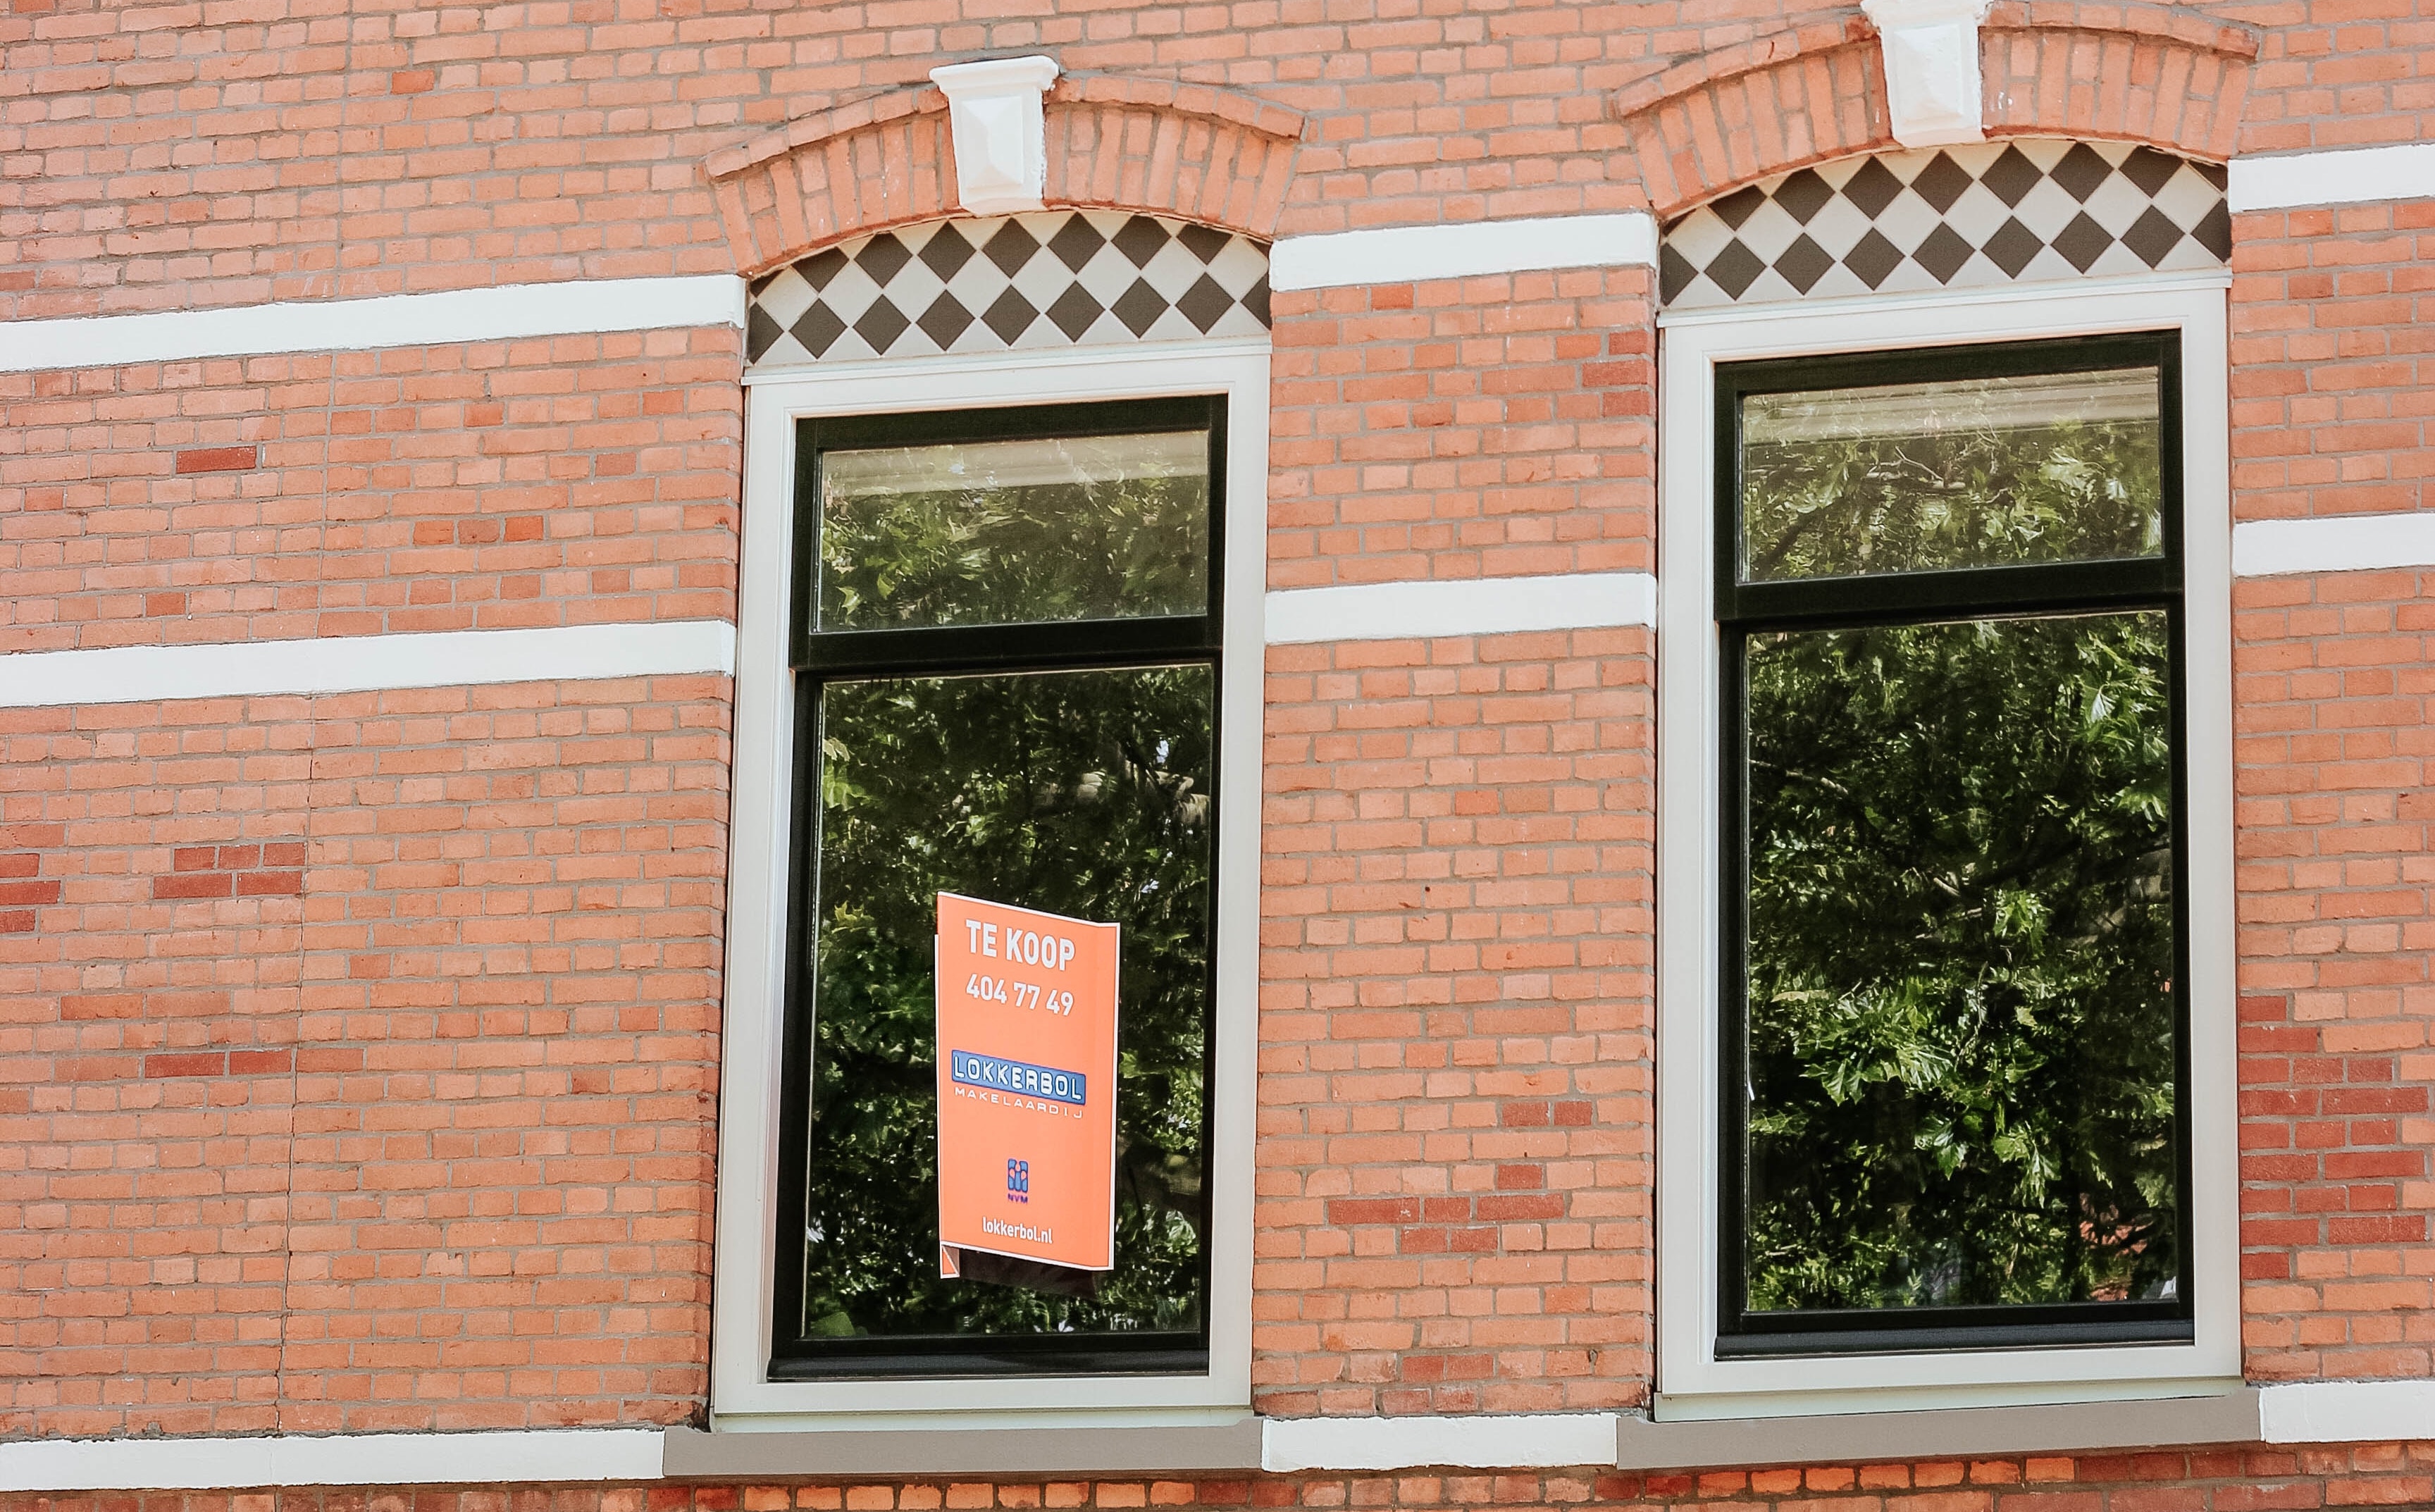 Nederlandse jongeren denken nooit eigen huis te kunnen kopen